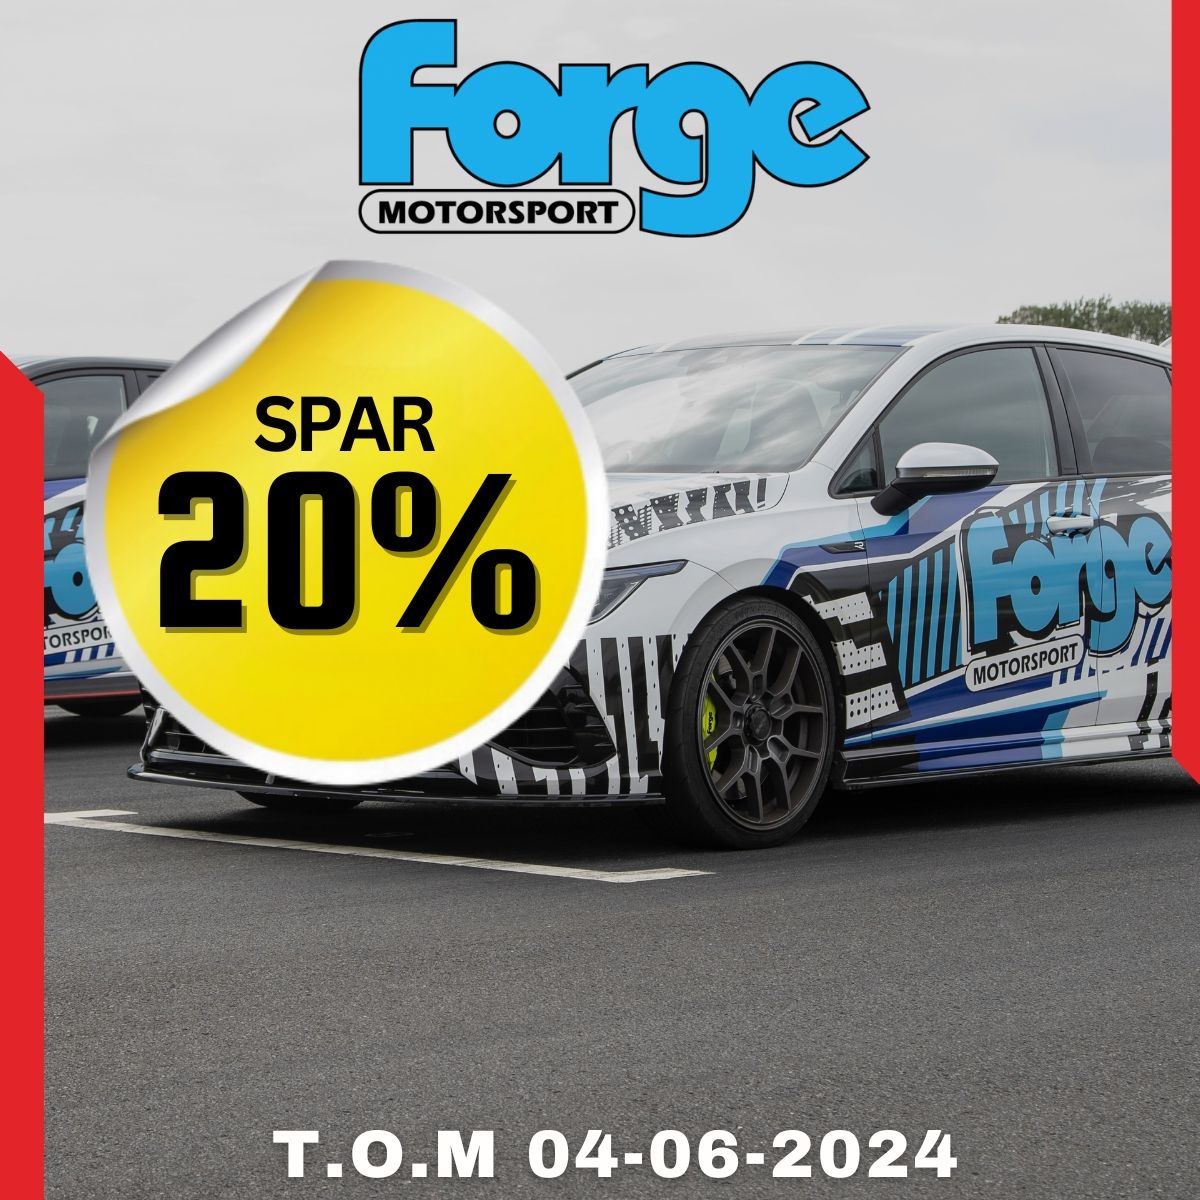 Spar 20% på Forge Motorsport på Nardocar.no